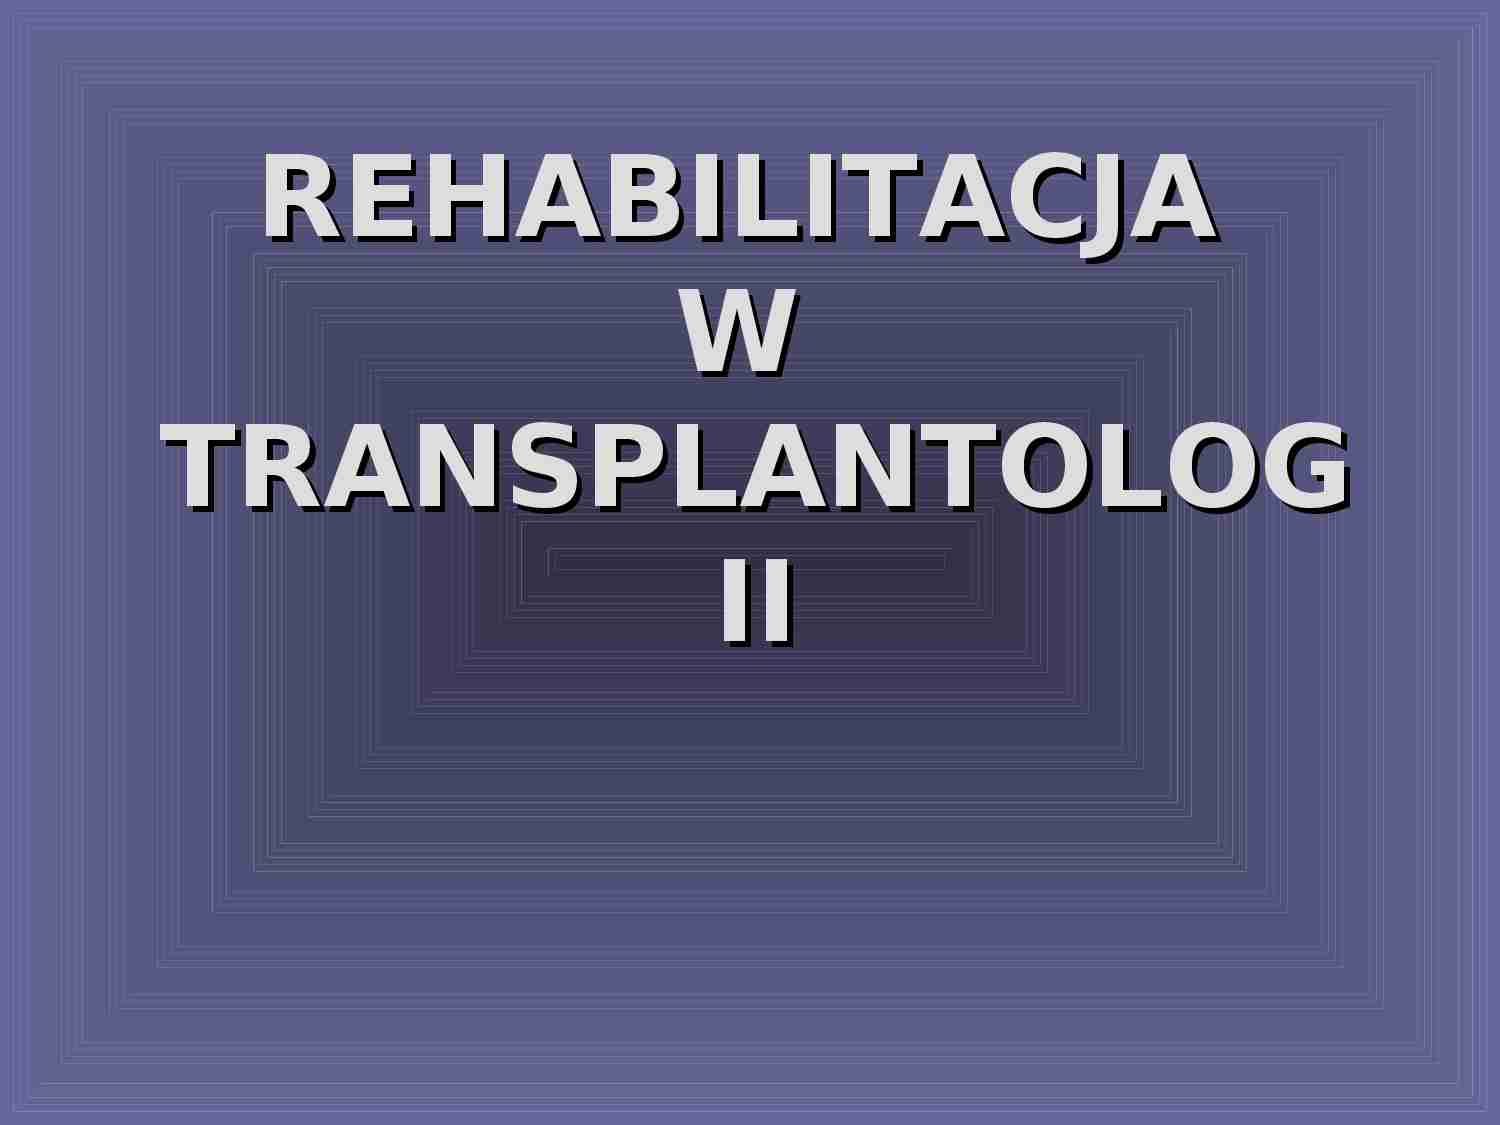 Rehabilitacja w transplantologii - strona 1